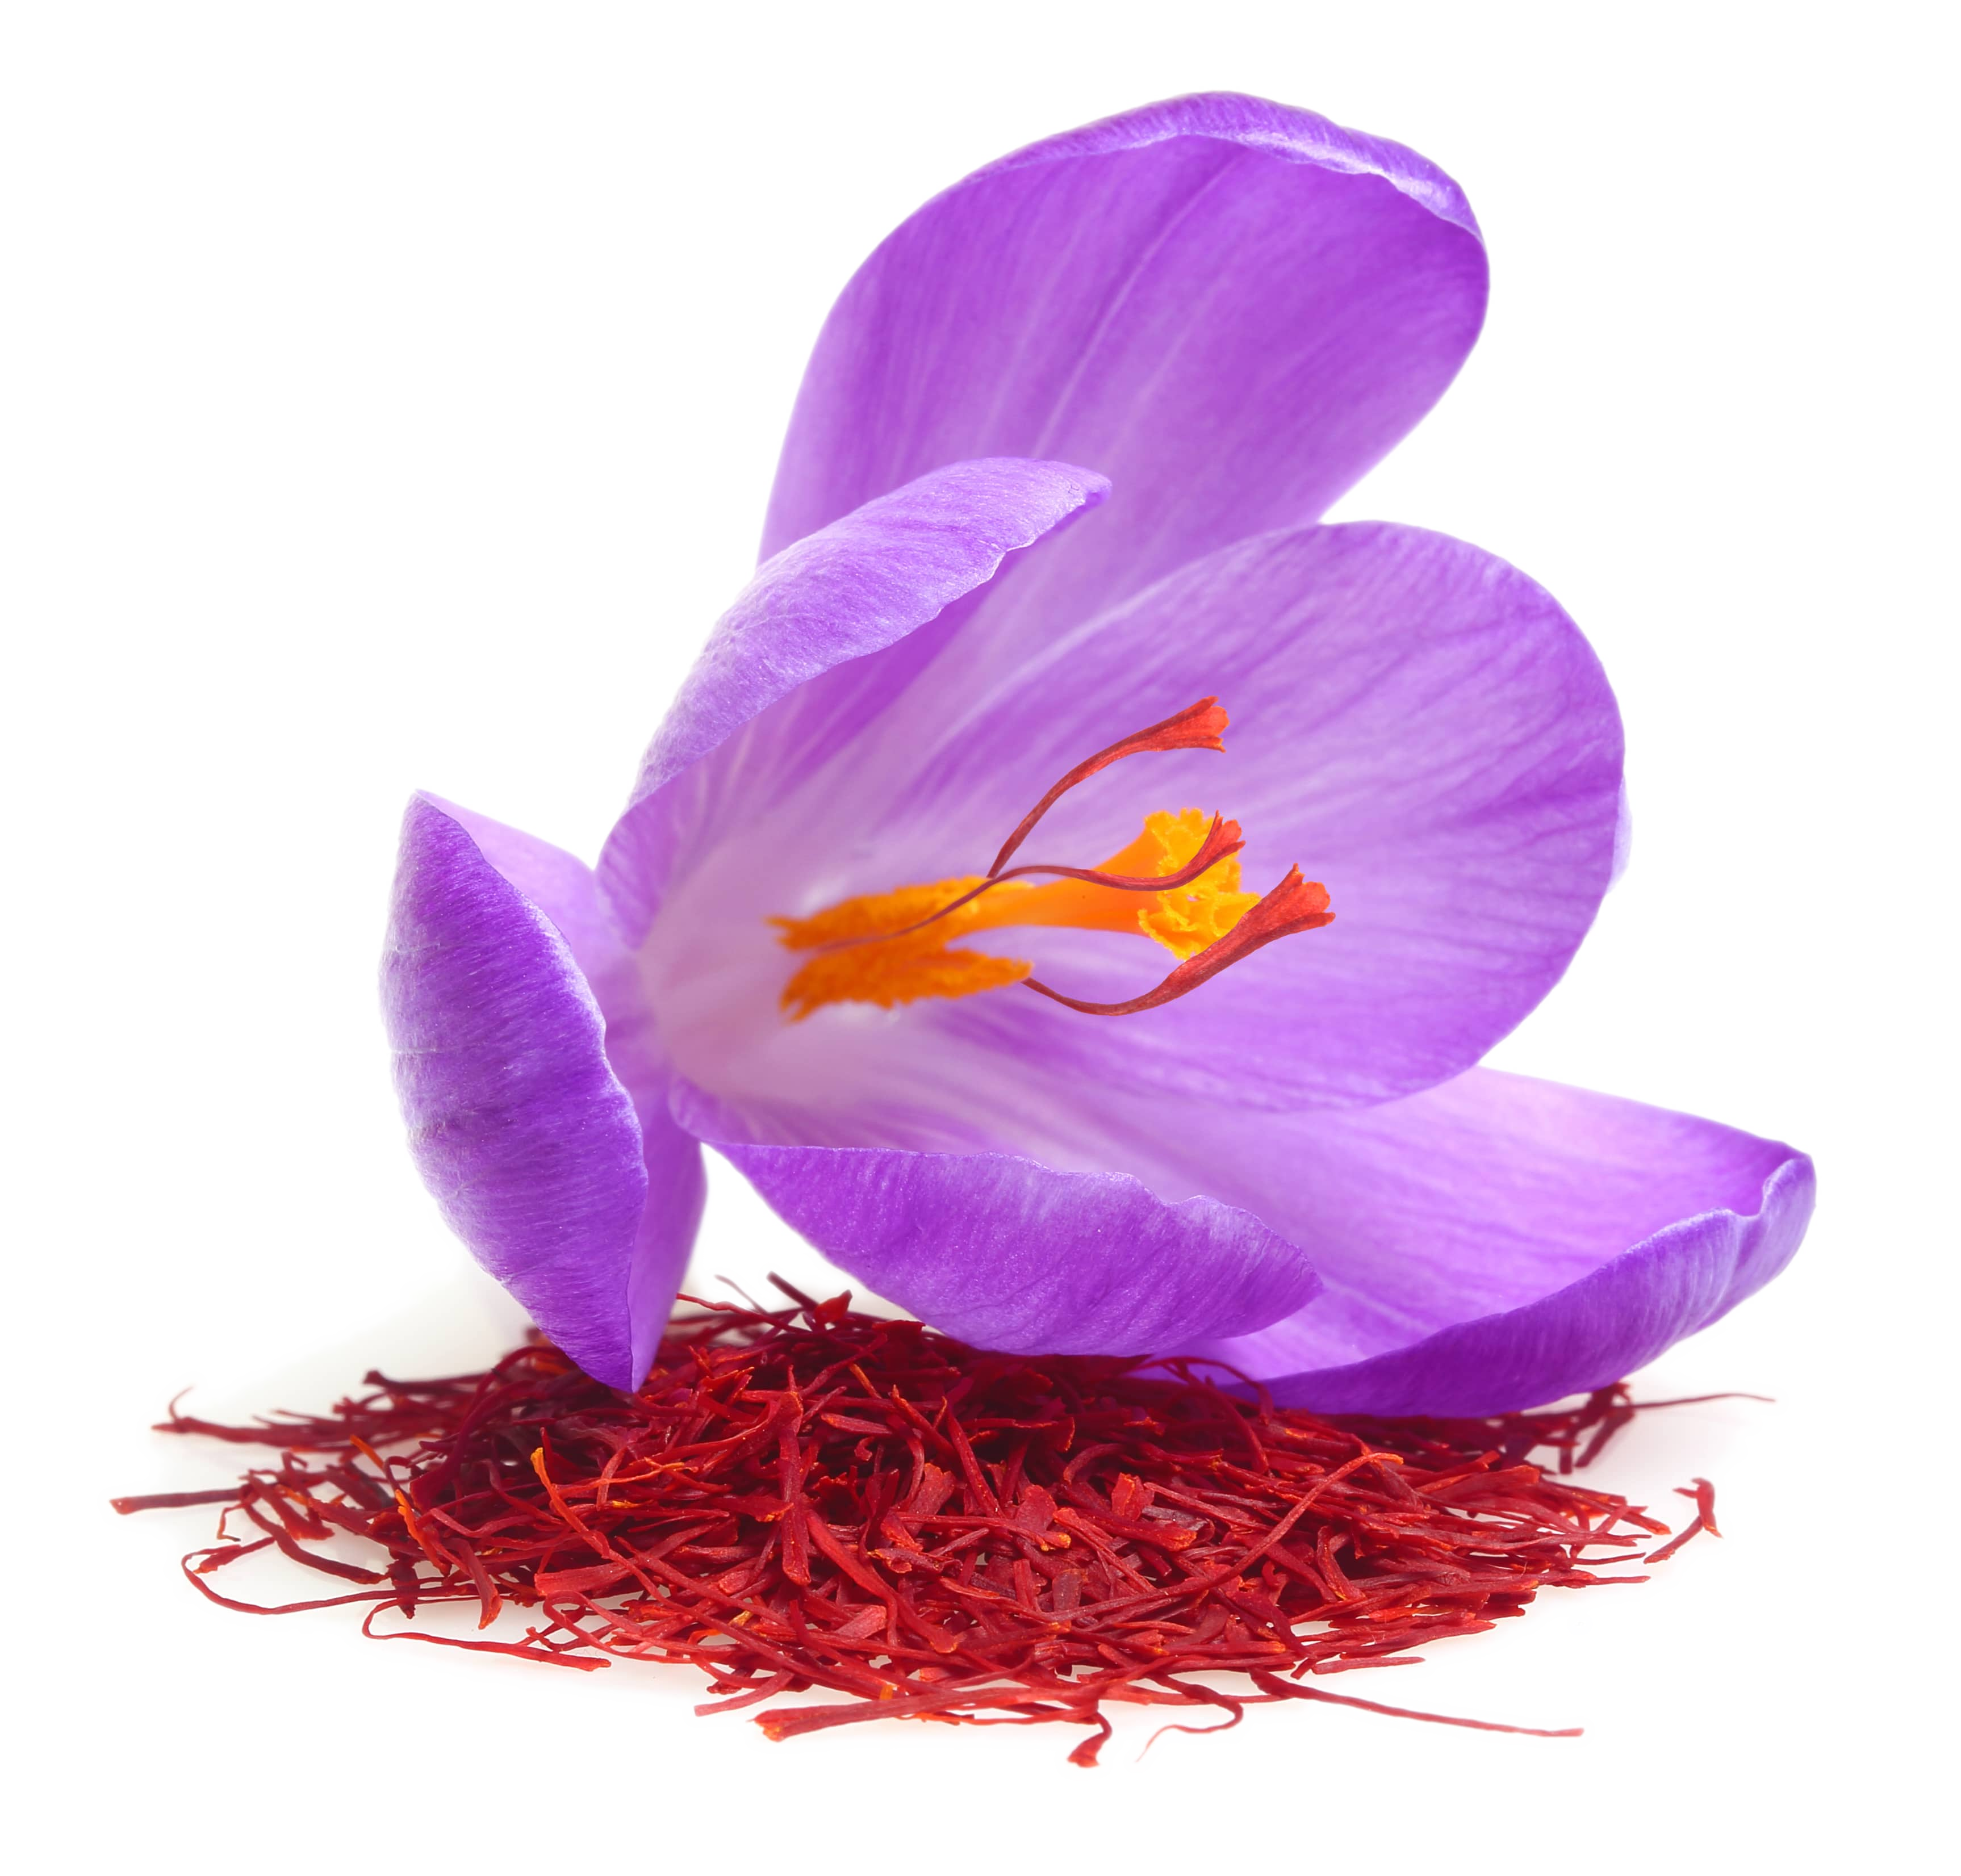 Saffron image